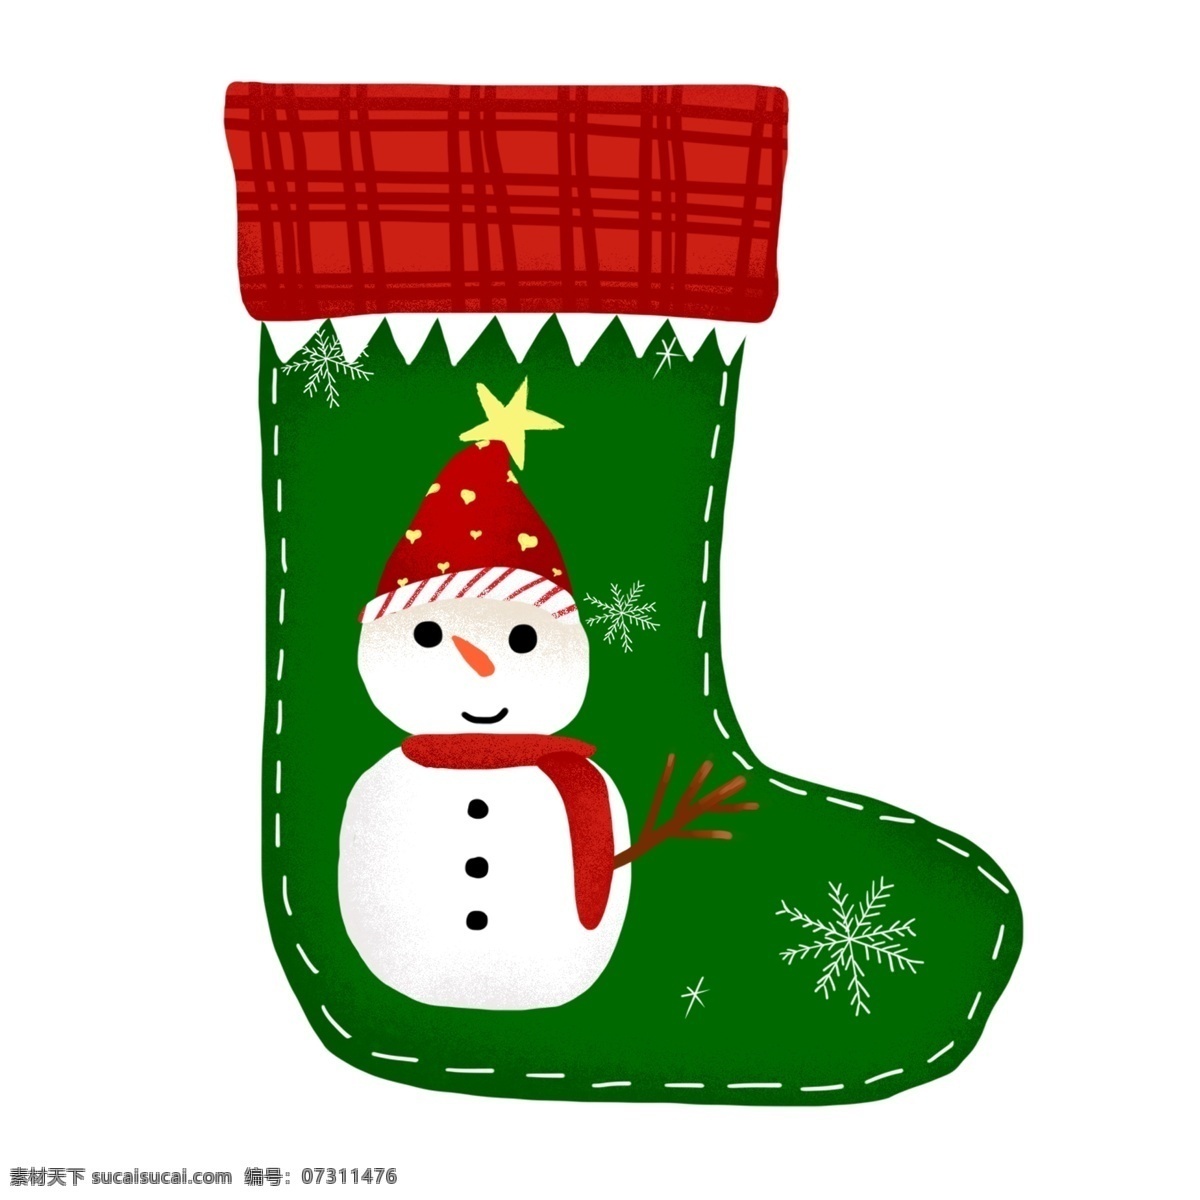 手绘 圣诞 袜 圣诞节 元素 戴 红帽子 雪人 雪花 圣诞袜 圣诞节元素 手绘圣诞袜 手绘雪人 雪人元素 手绘雪花